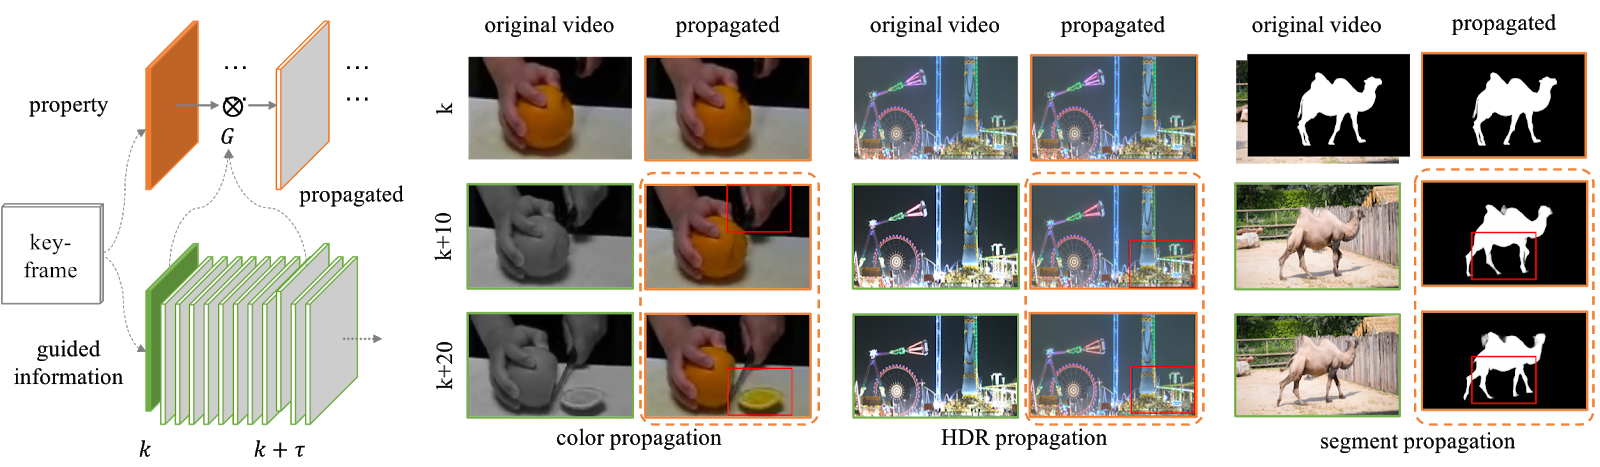 NVIDIA开发新的基于深度学习的算法，实时为黑白视频上色